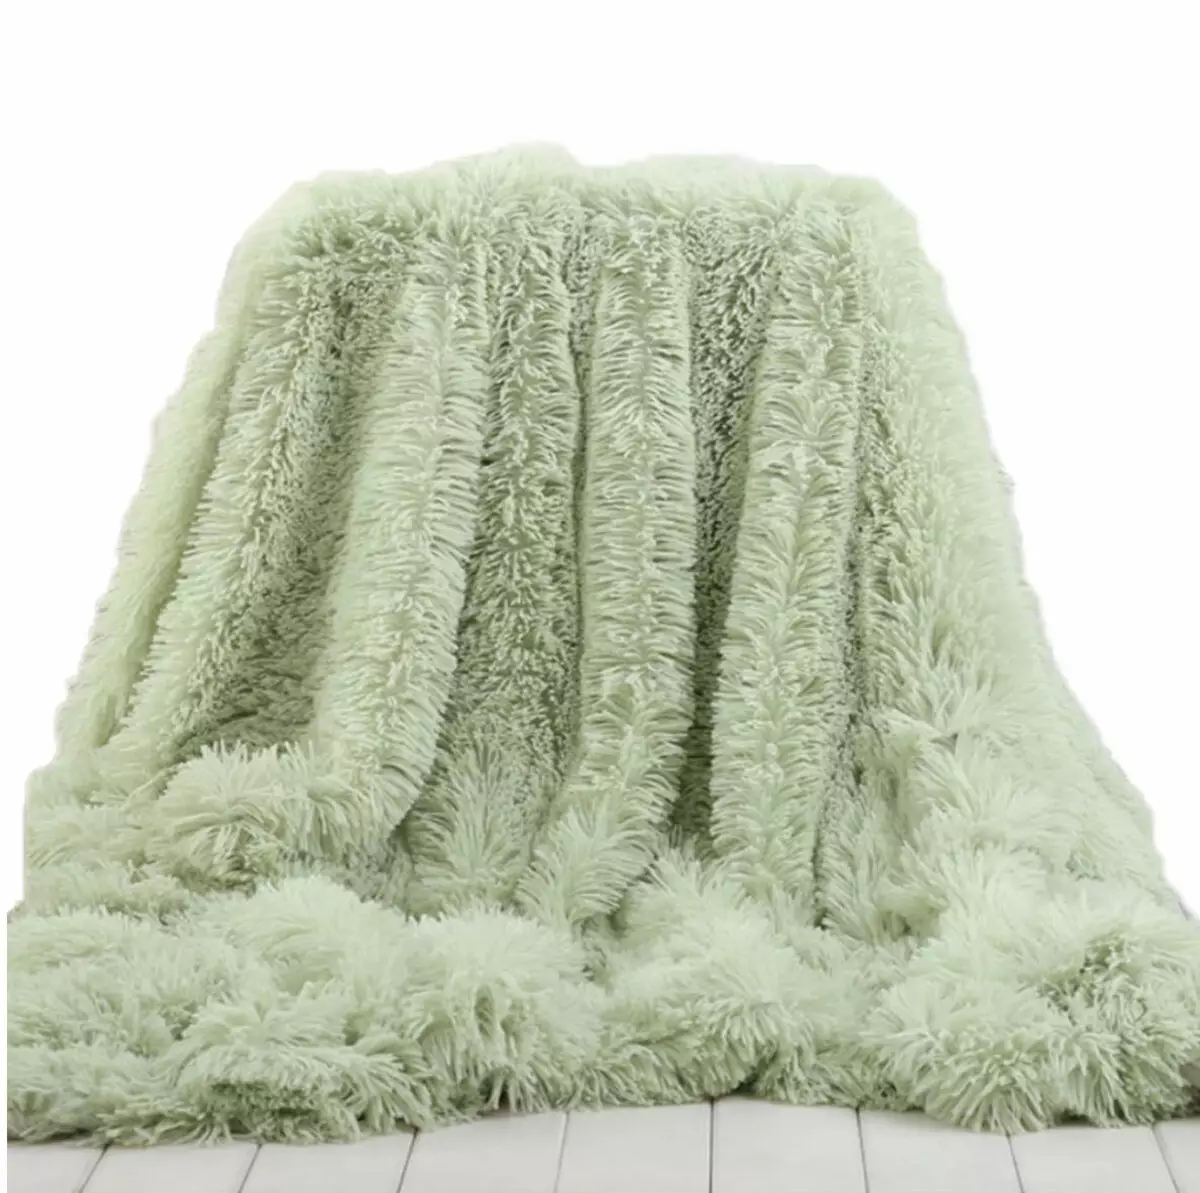 温暖的毯子：如何在床上选择一个舒适的床罩？温暖的毯子，材料和设计，尺寸和护理提示 24937_12